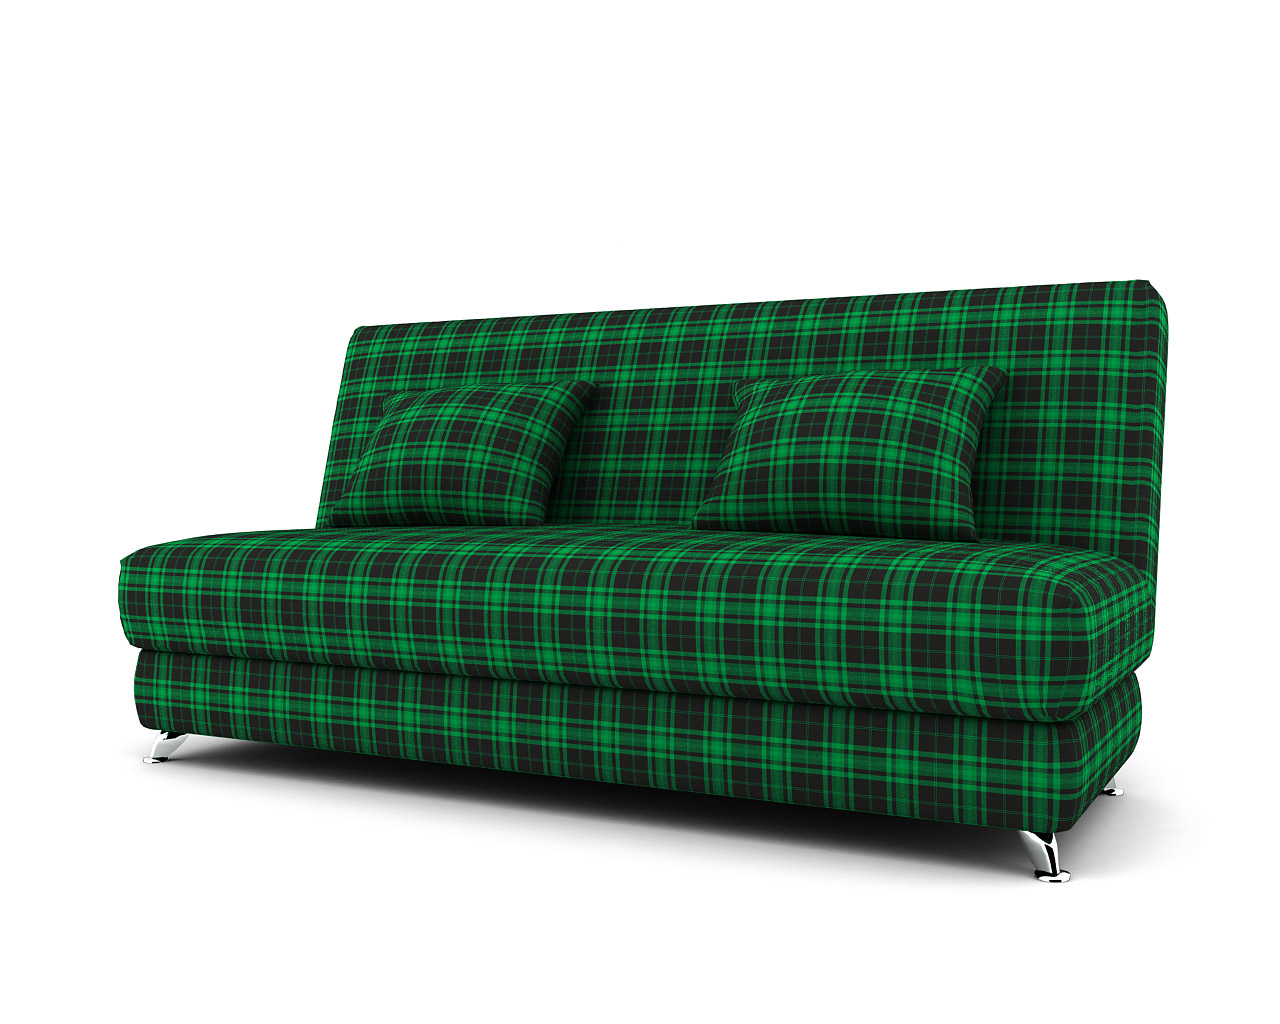 диван без подлокотников с независимым пружинным блоком